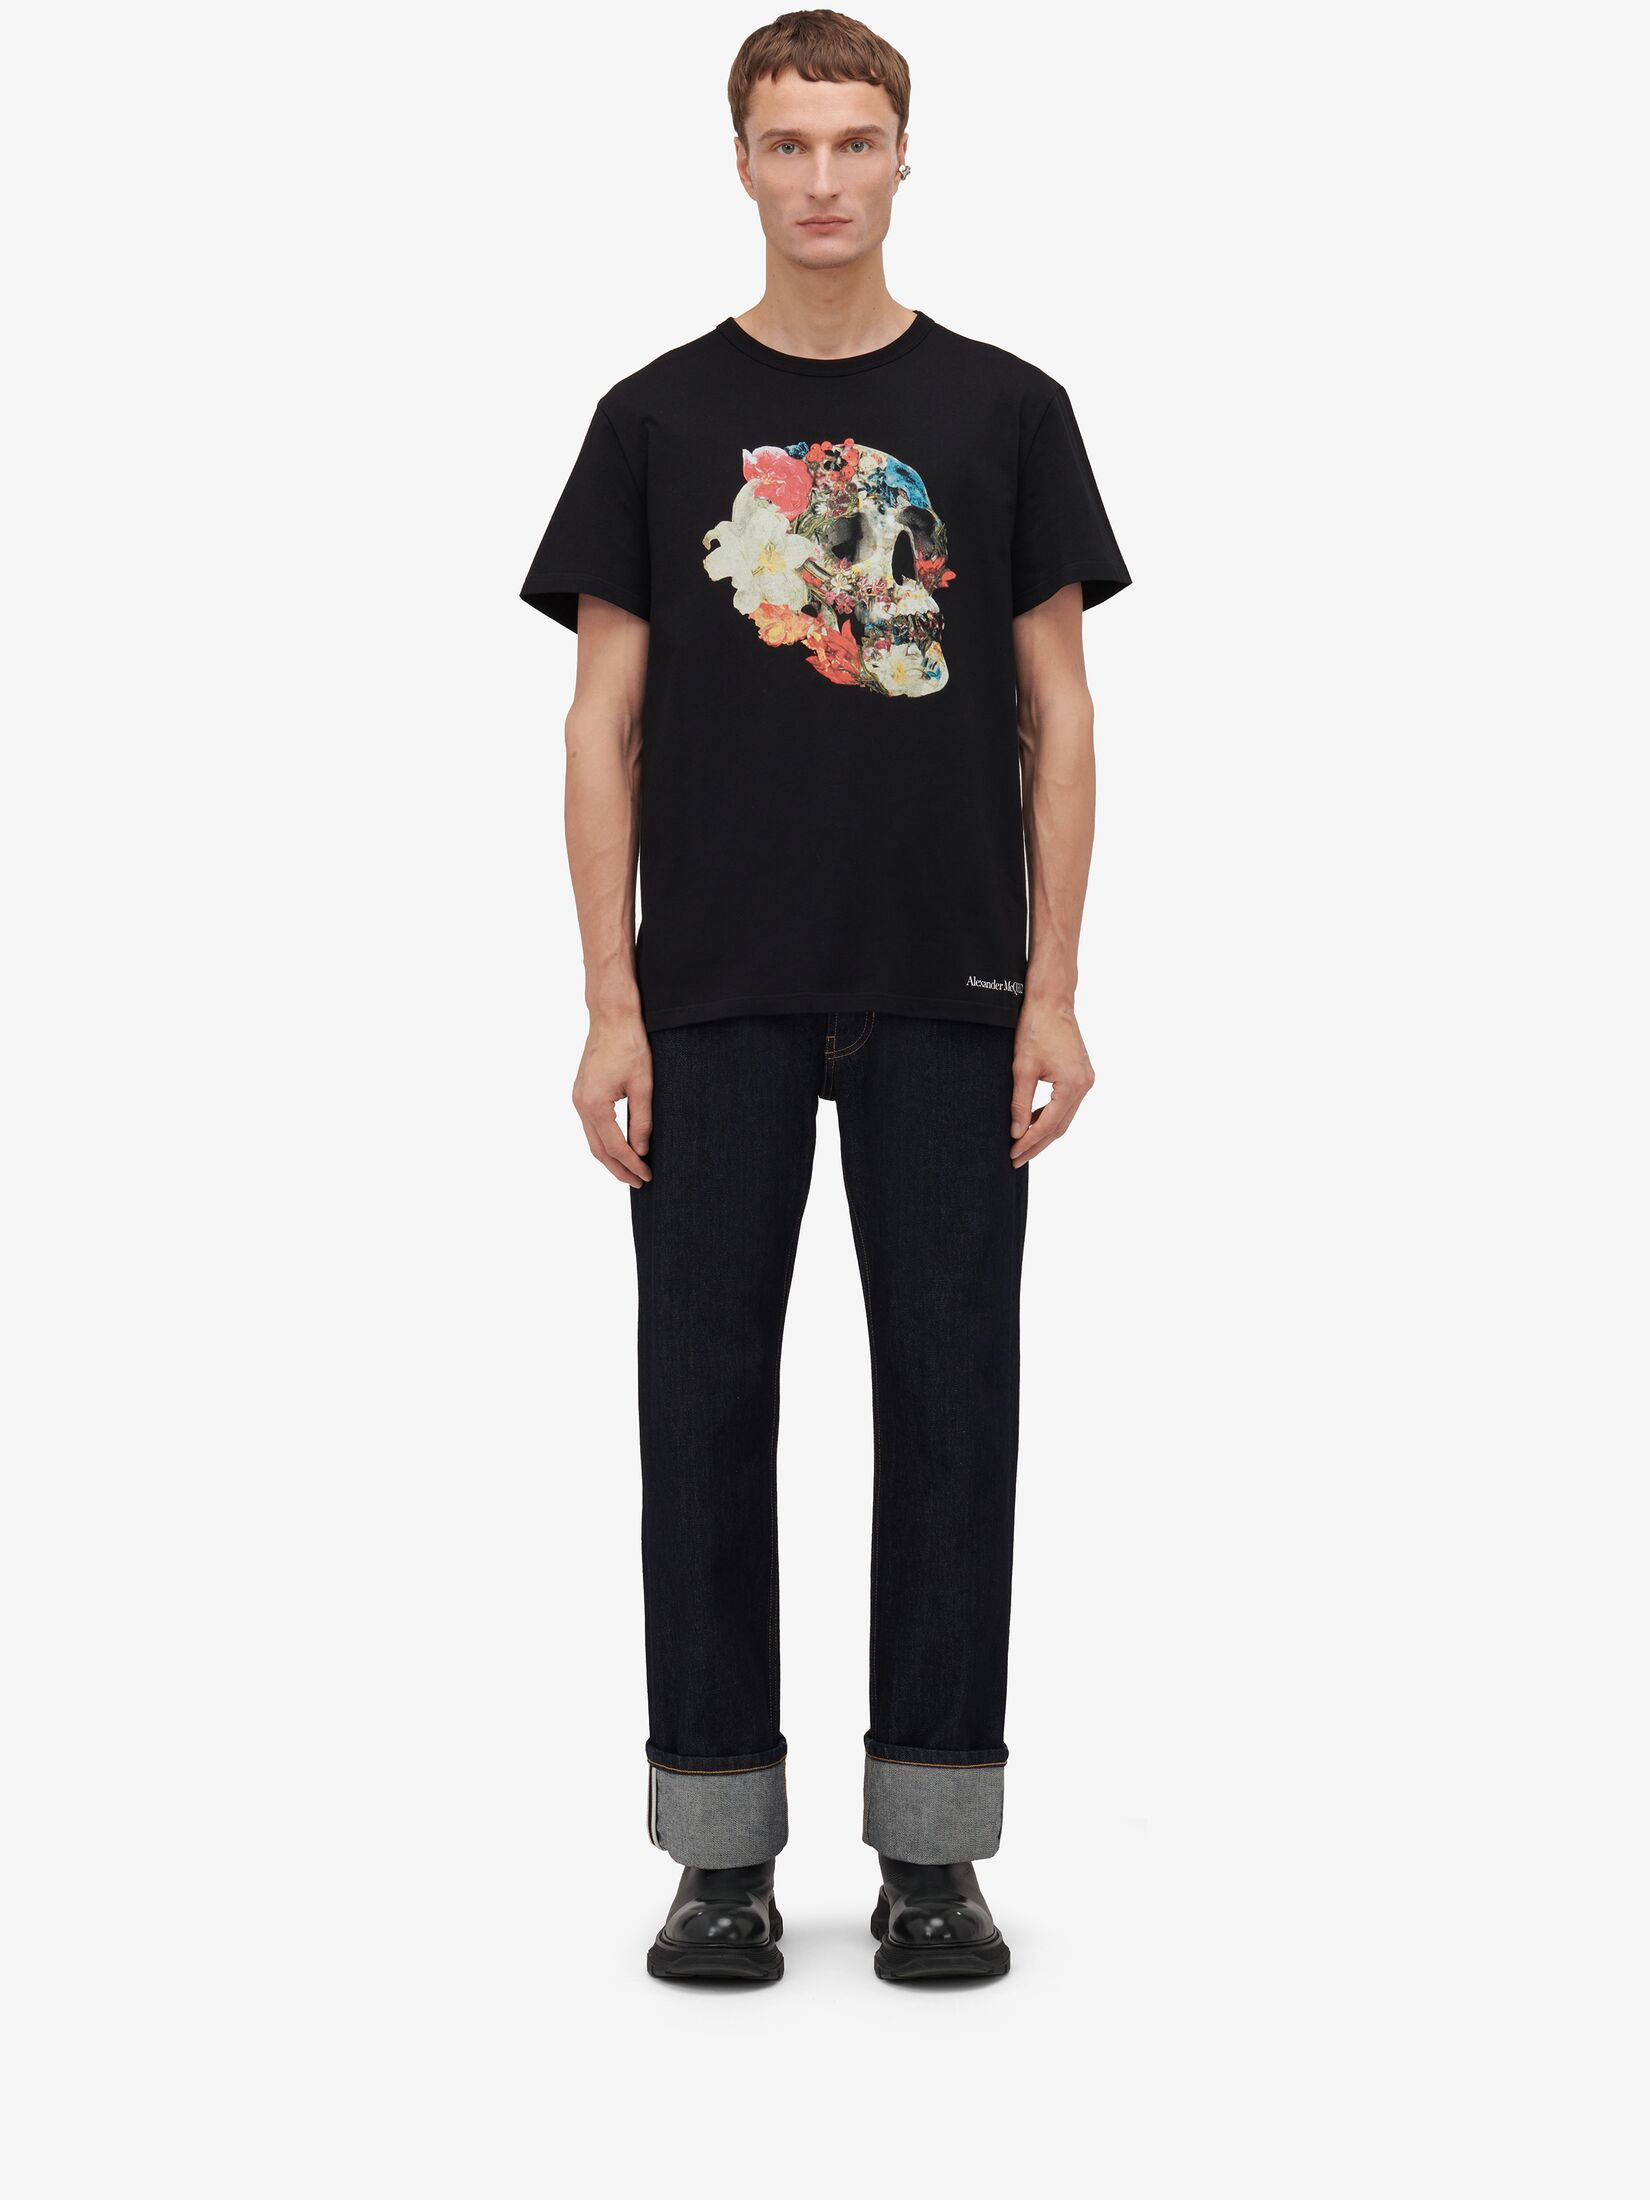 T-shirt Floral Skull